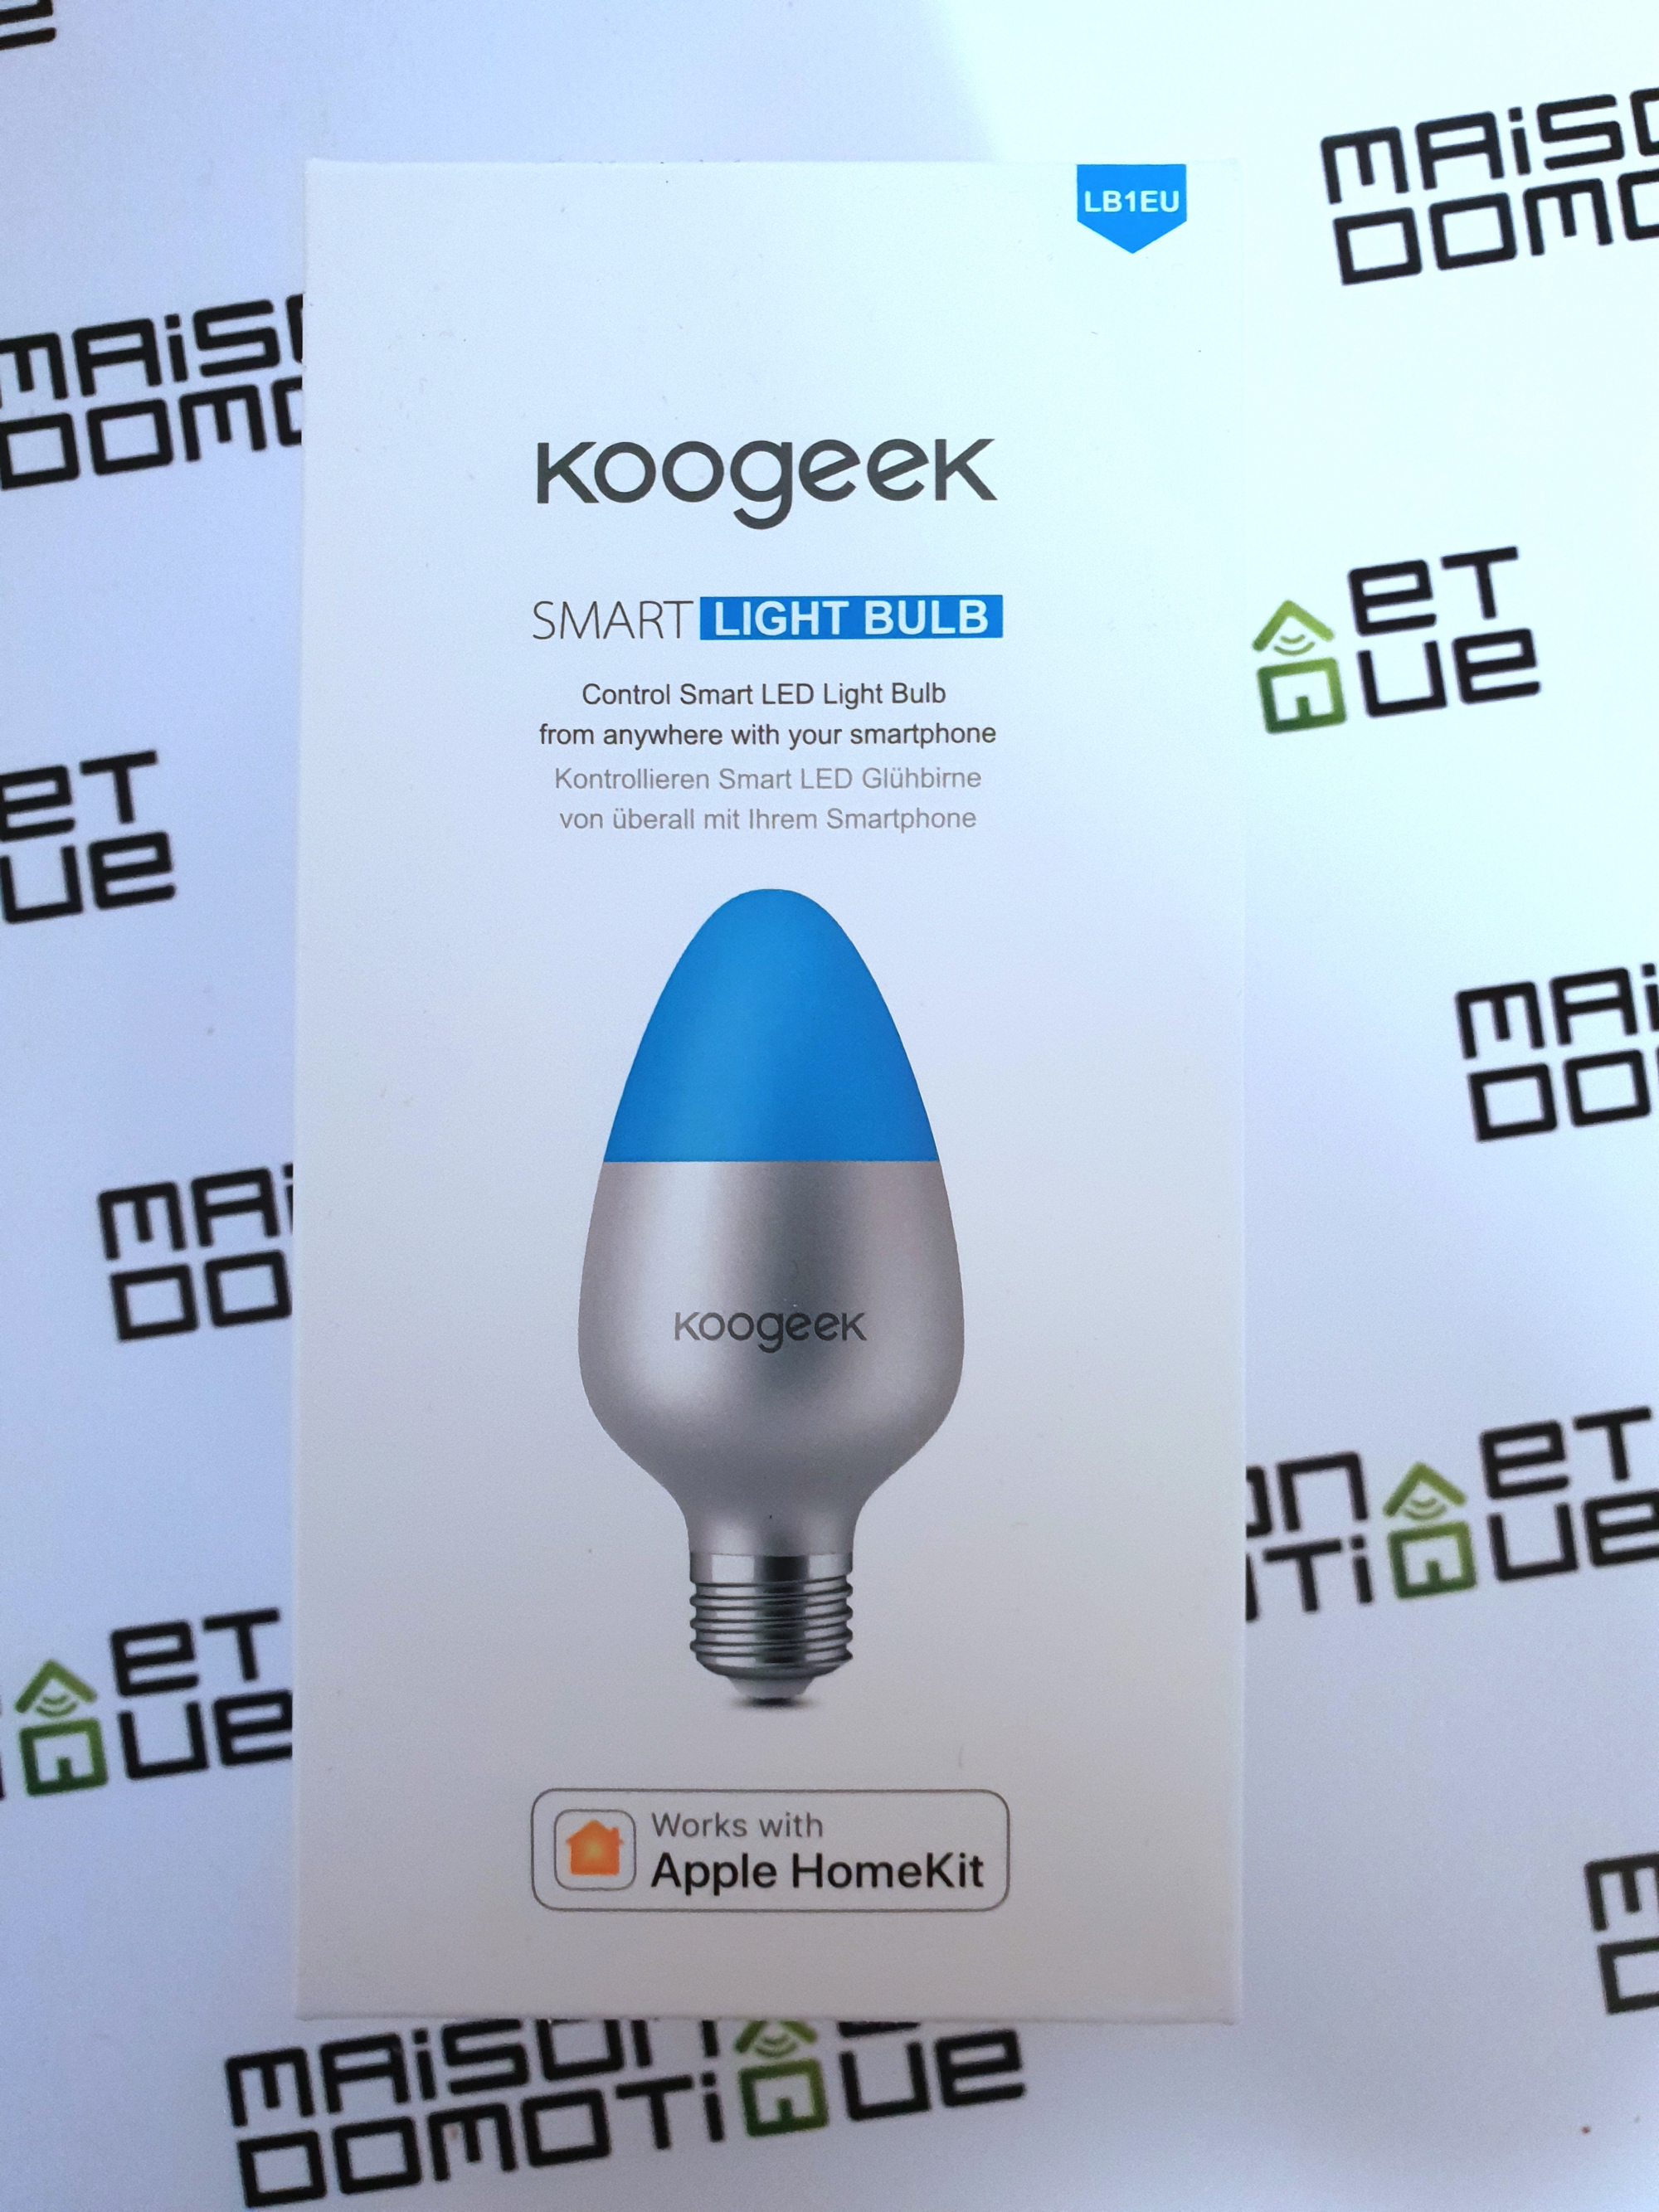 Koogeek Smart Light Bulb: test de l'ampoule Wifi compatible Homekit -  Maison et Domotique